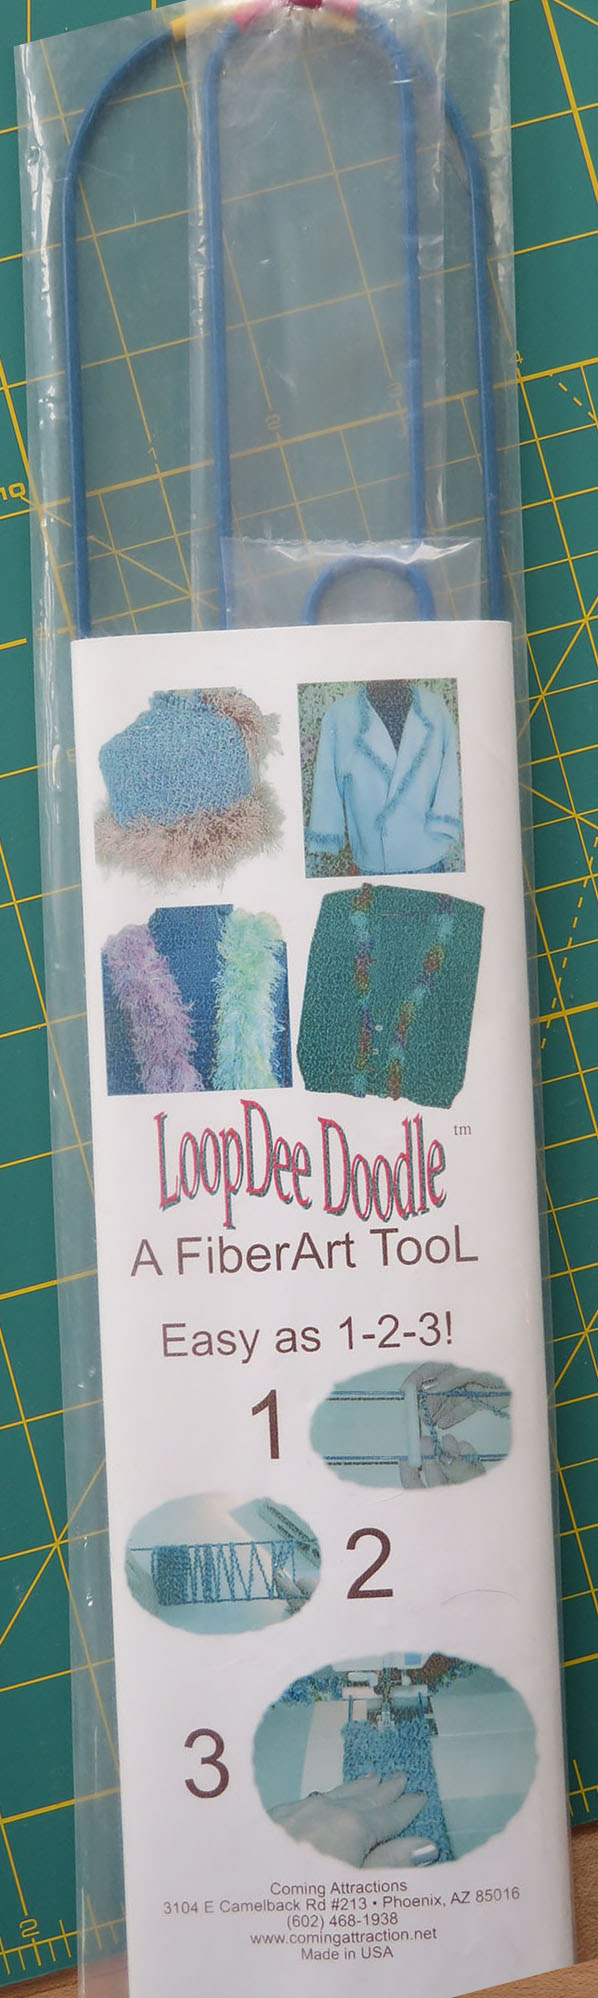 LoopDee Doodle Fiber Art Tool